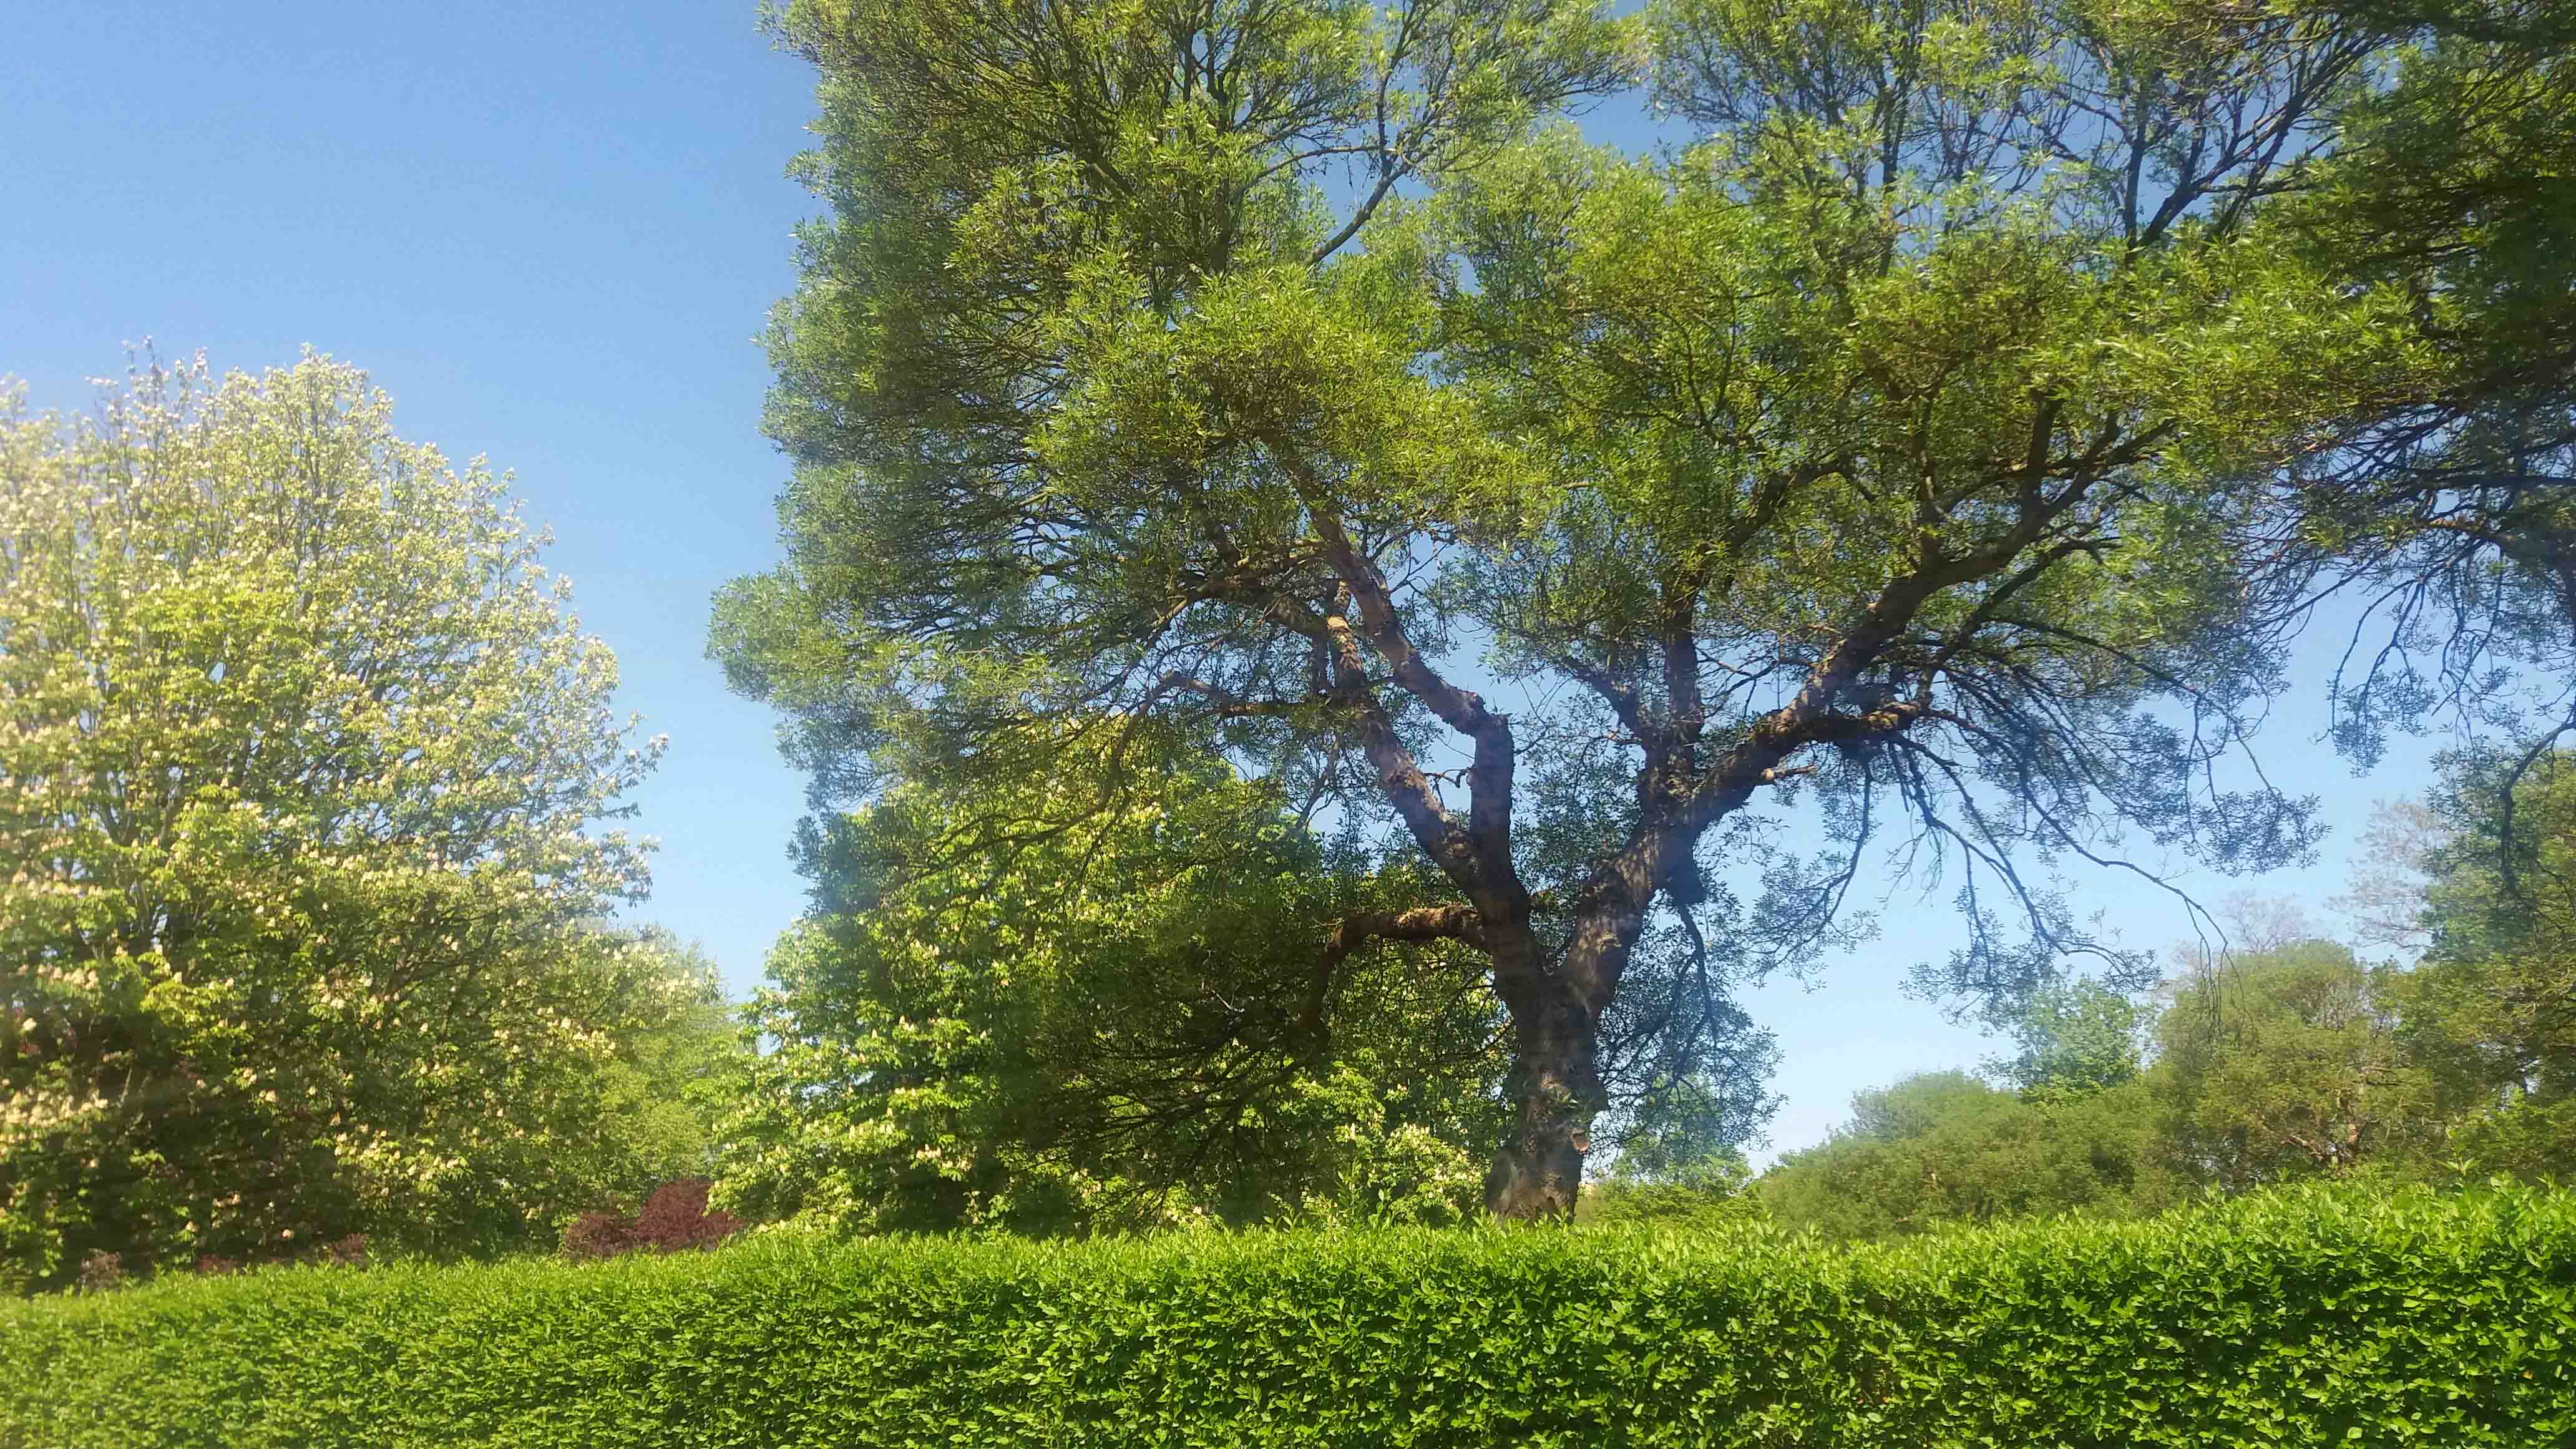 Zeer groene boom in april/ mei bij blauwe lucht